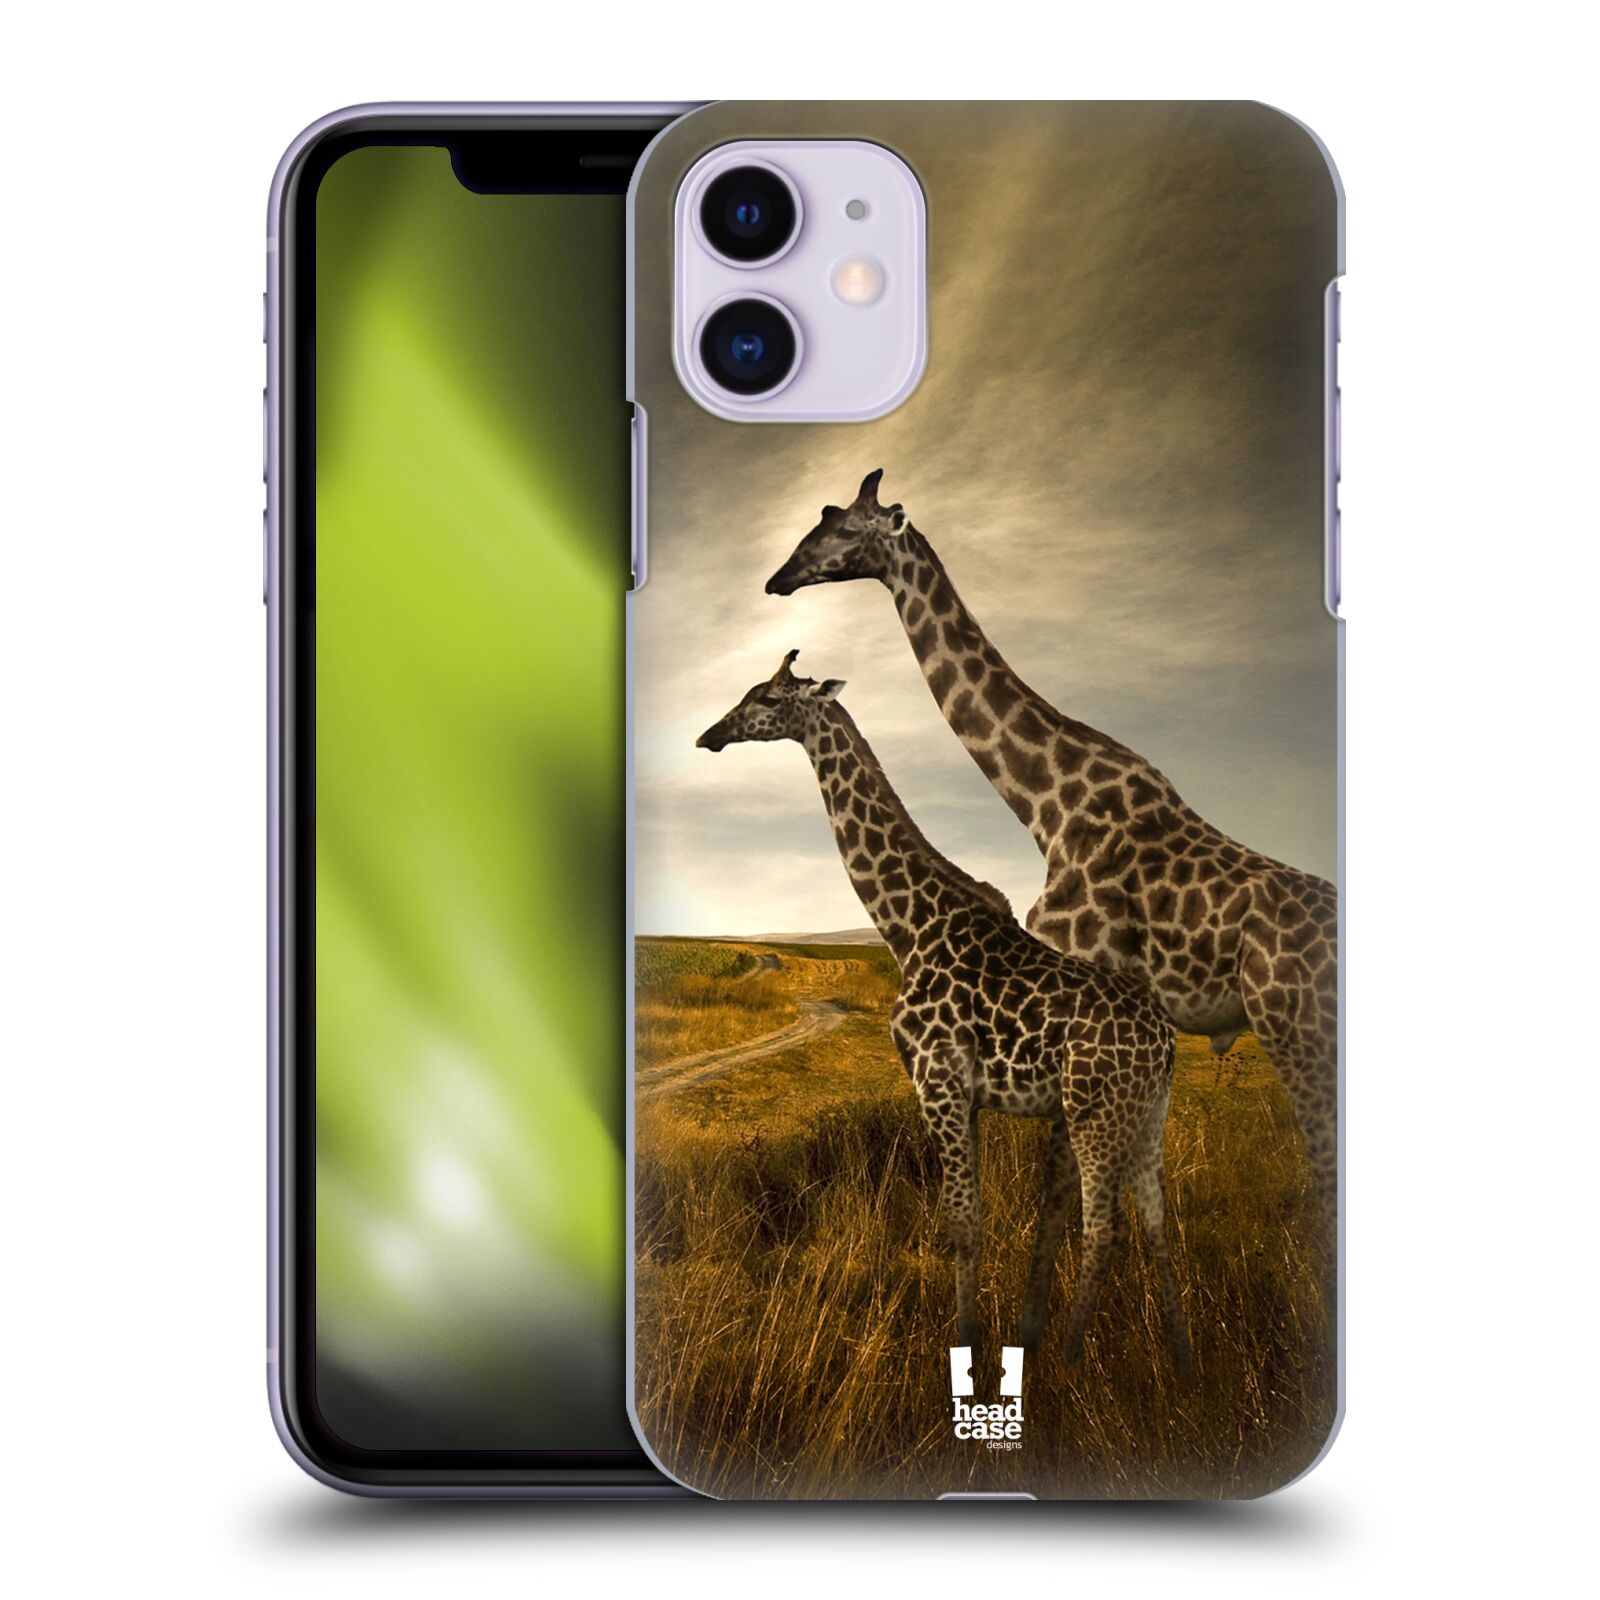 Zadní obal pro mobil Apple Iphone 11 - HEAD CASE - Svět zvířat žirafy